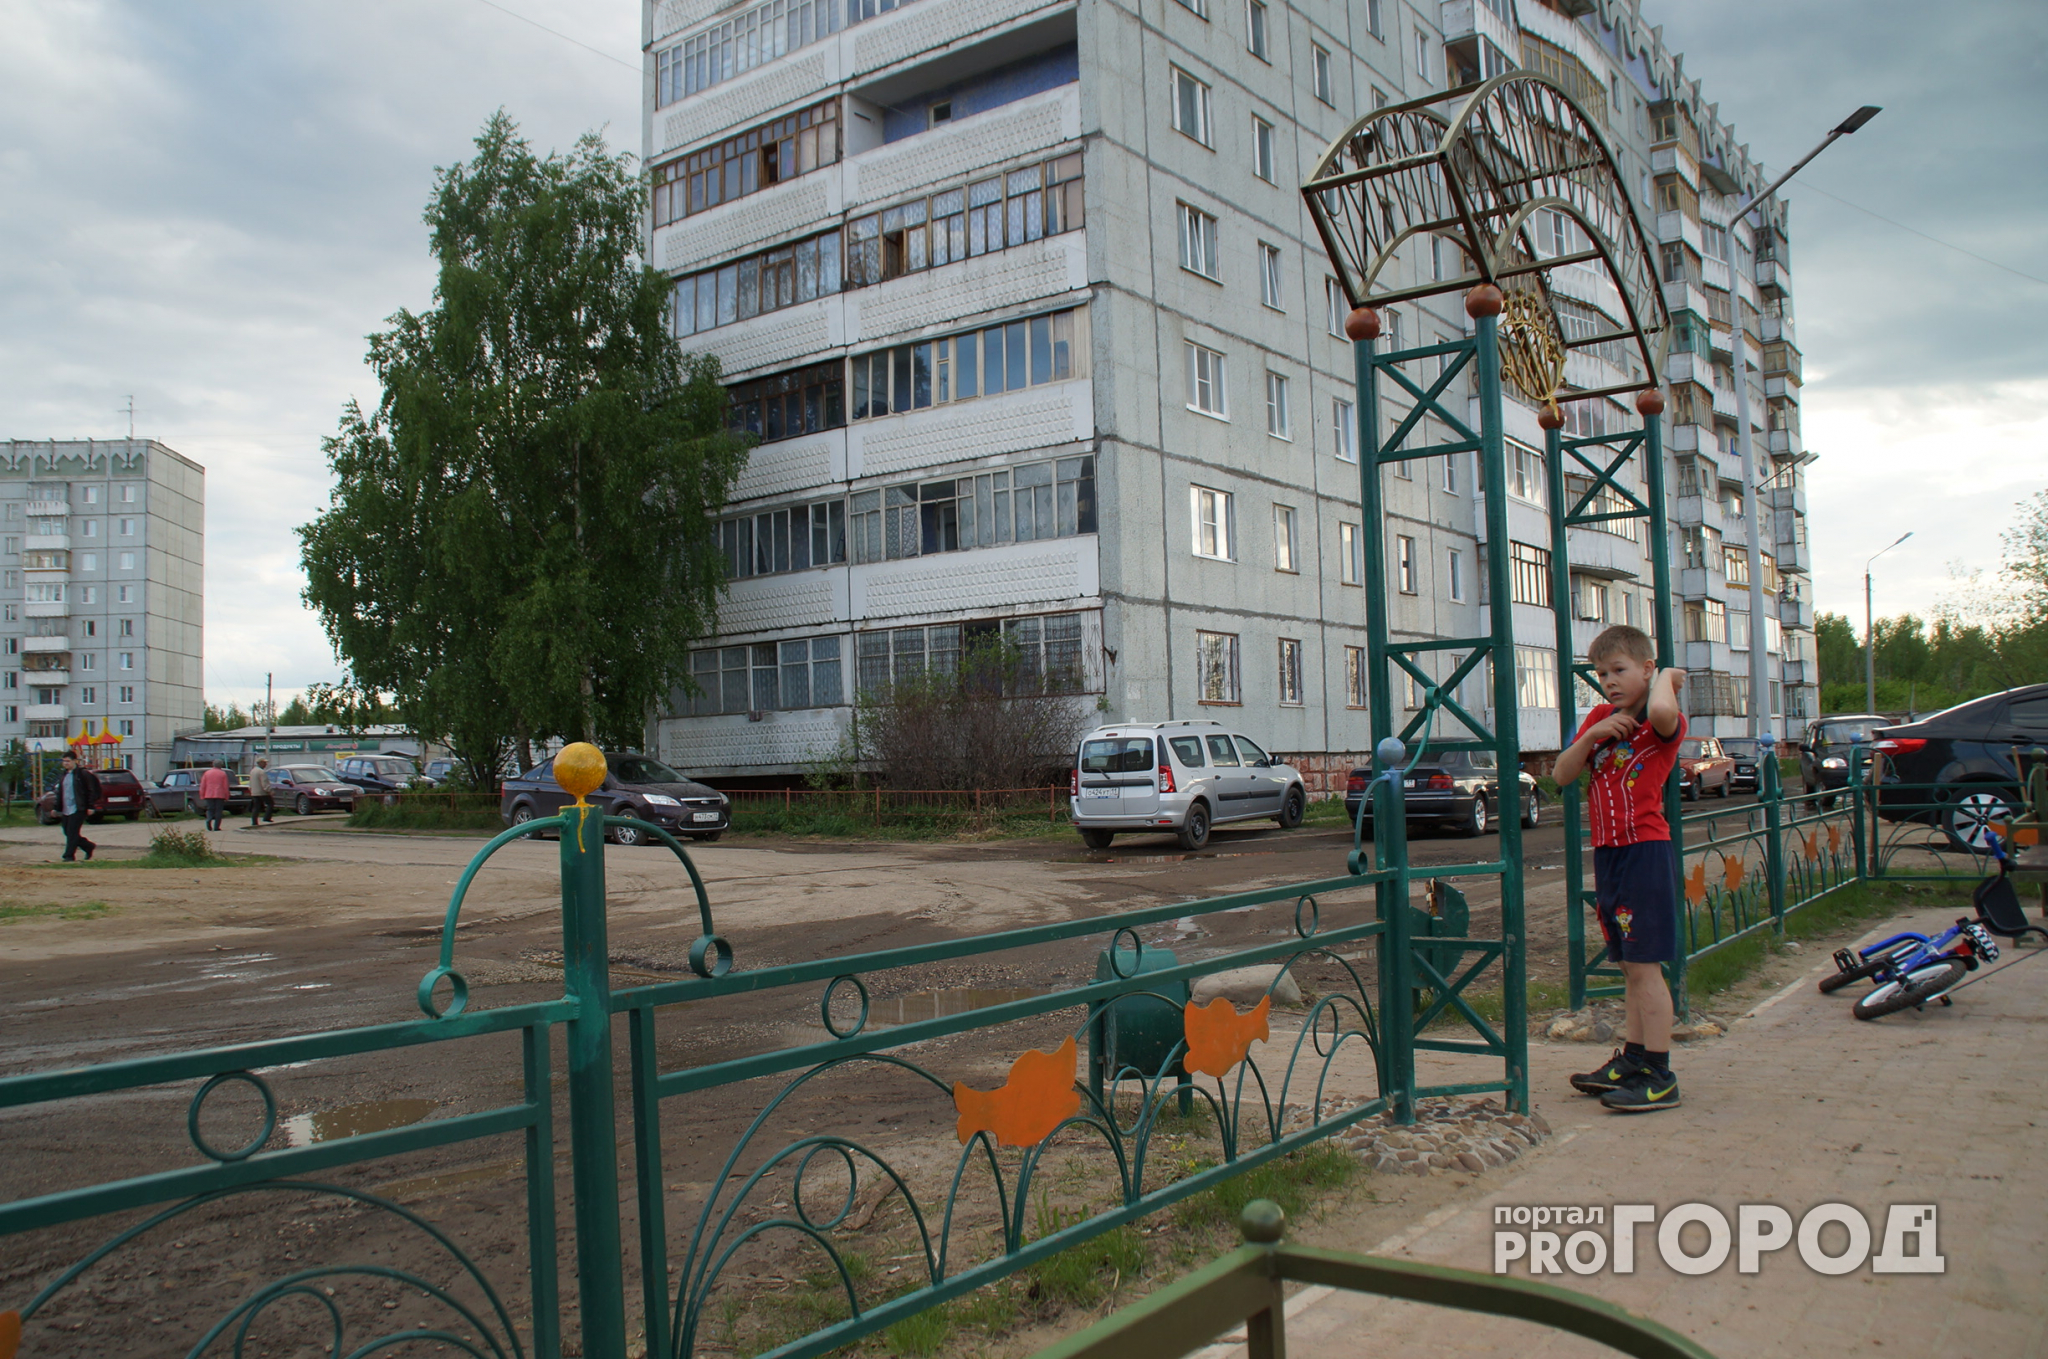 Сыктывкар занимает последнее место в рейтинге "Лучший город РФ"